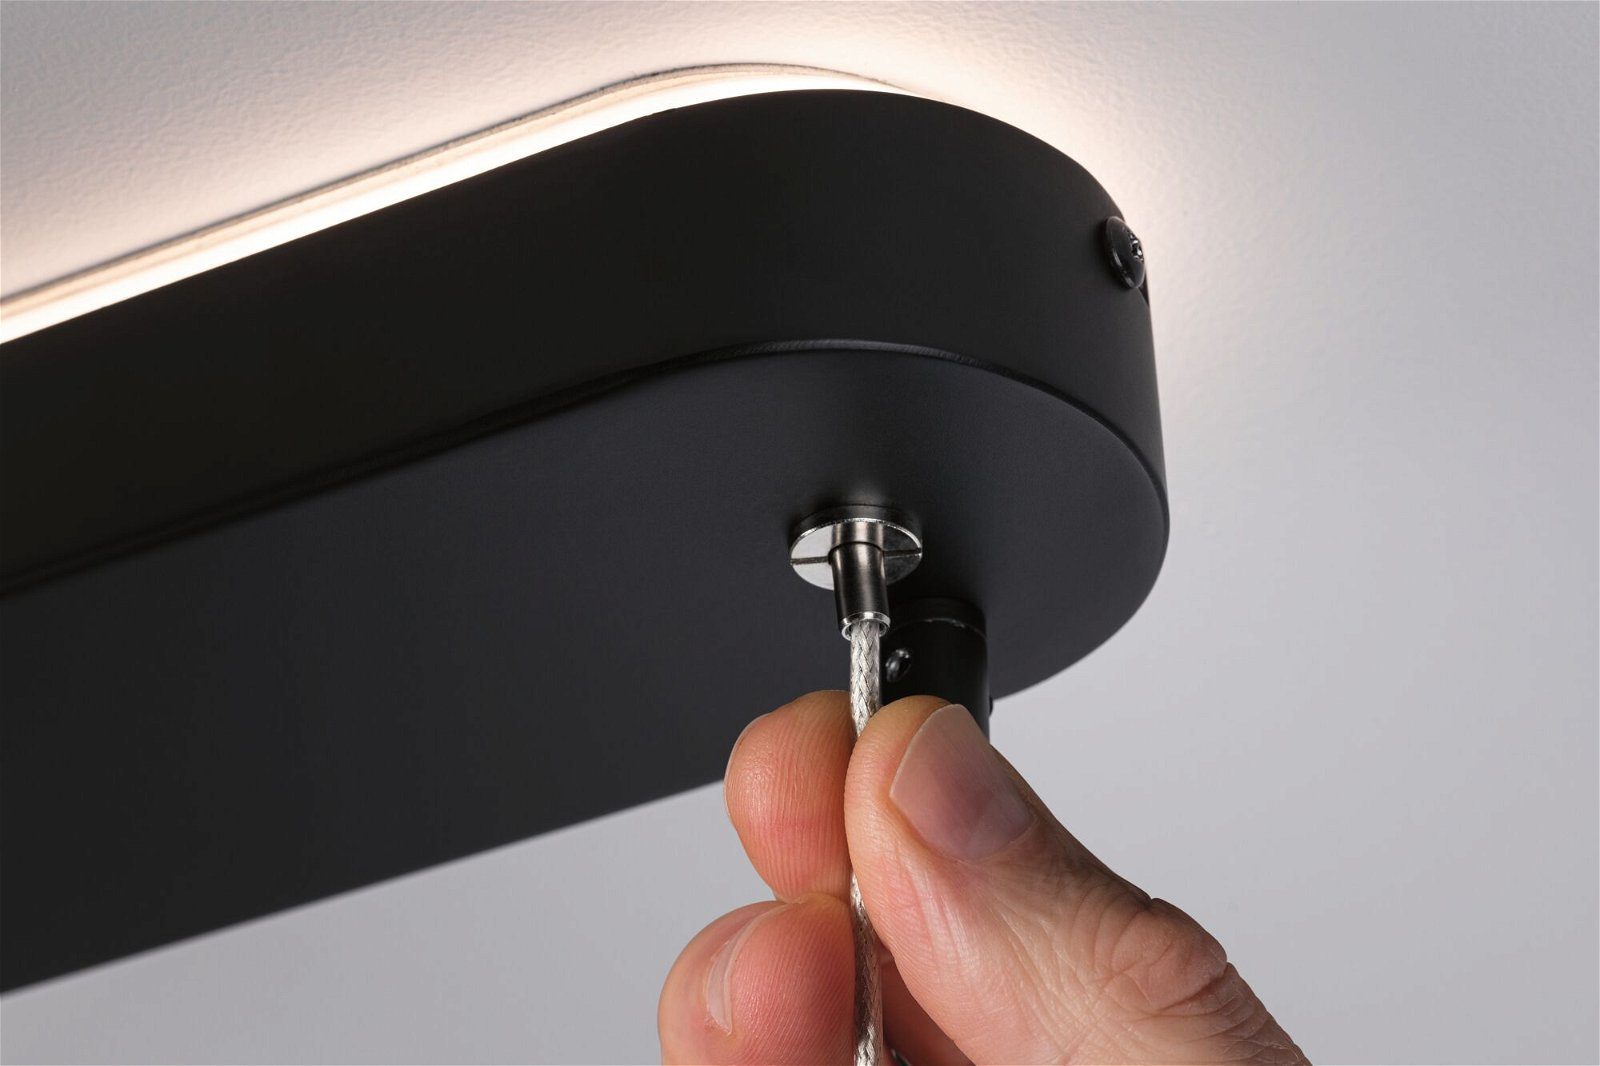 Paulmann LED Pendelleuchte Puric Pane Metall, Warmweiß, Home fest schwarz dimmbar Smart 6x6W integriert, Zigbee 230V LED Effect